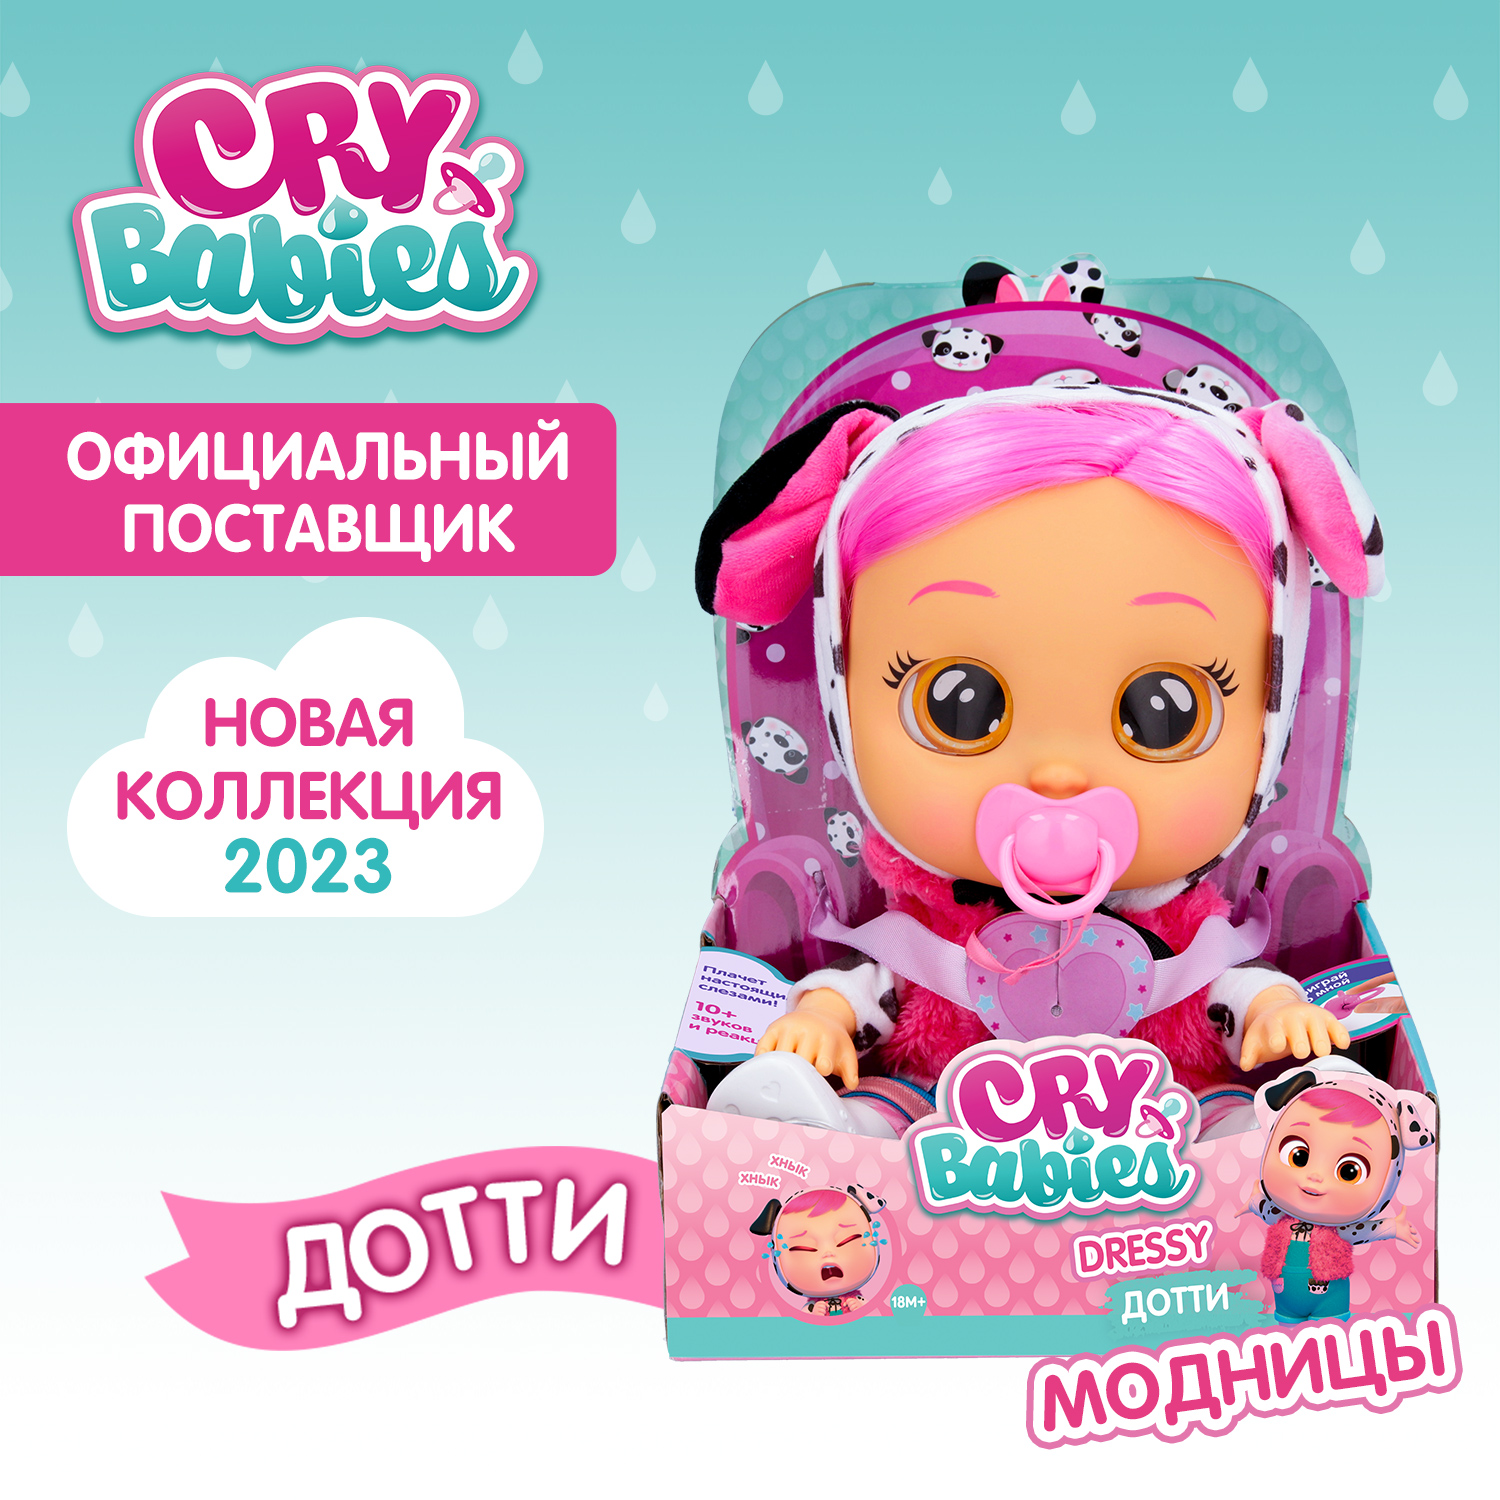 Кукла Cry Babies Дотти Модница, интерактивная, плачущая, 40884 кукла cry babies лала модница интерактивная плачущая 40888